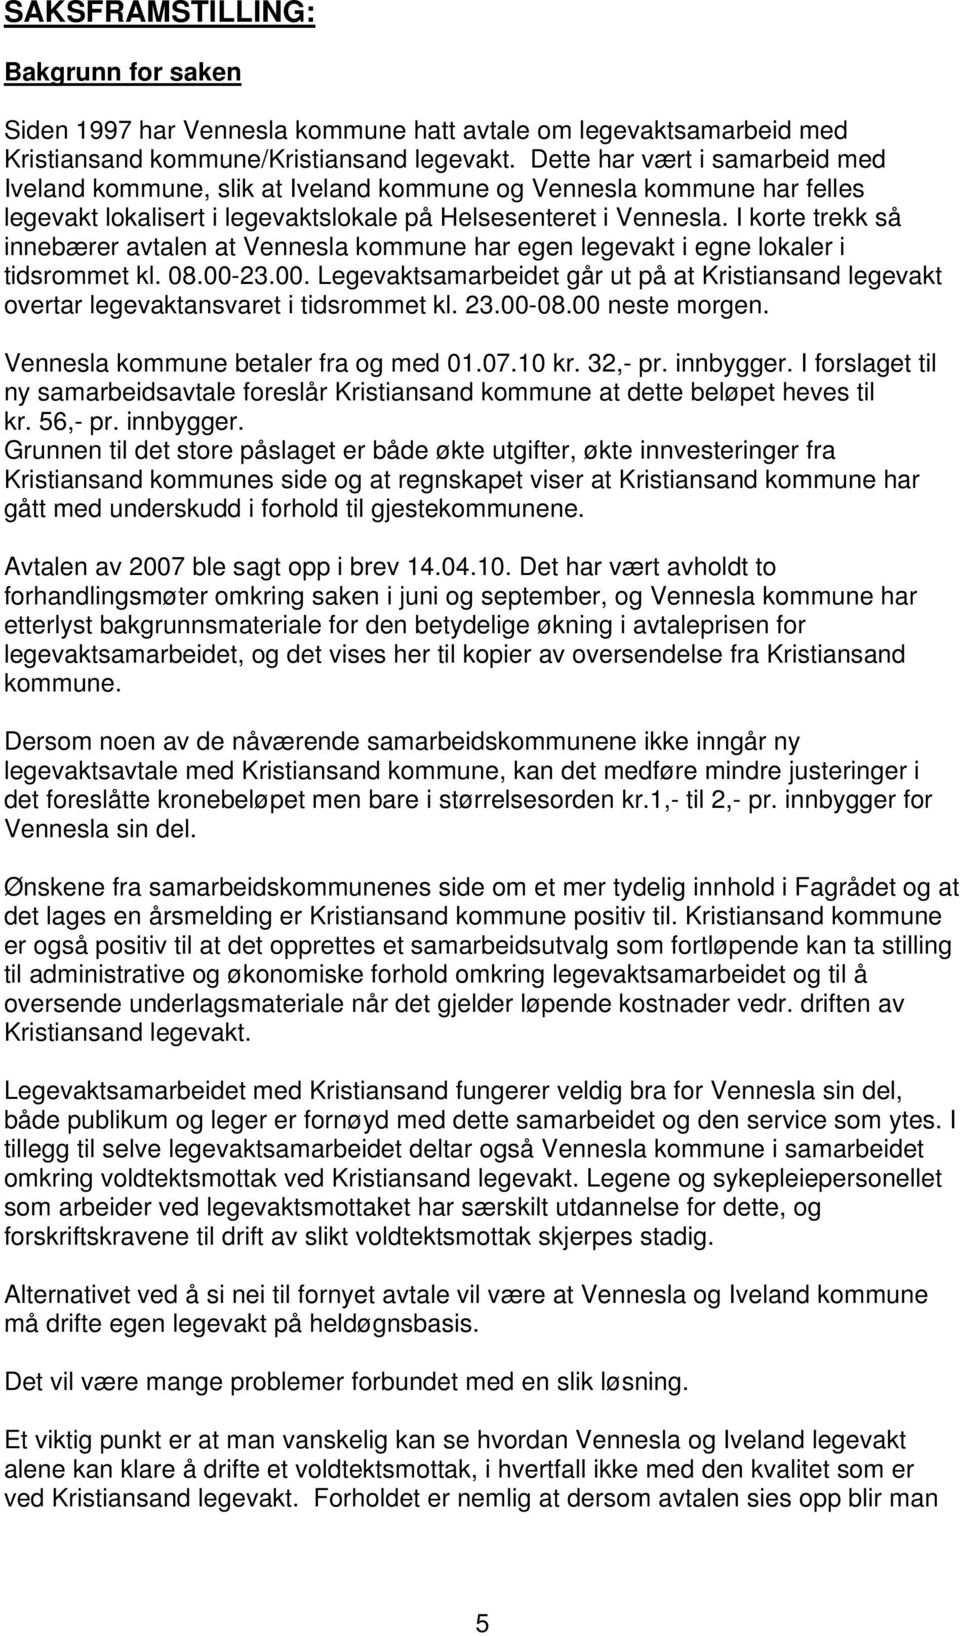 I korte trekk så innebærer avtalen at Vennesla kommune har egen legevakt i egne lokaler i tidsrommet kl. 08.00-